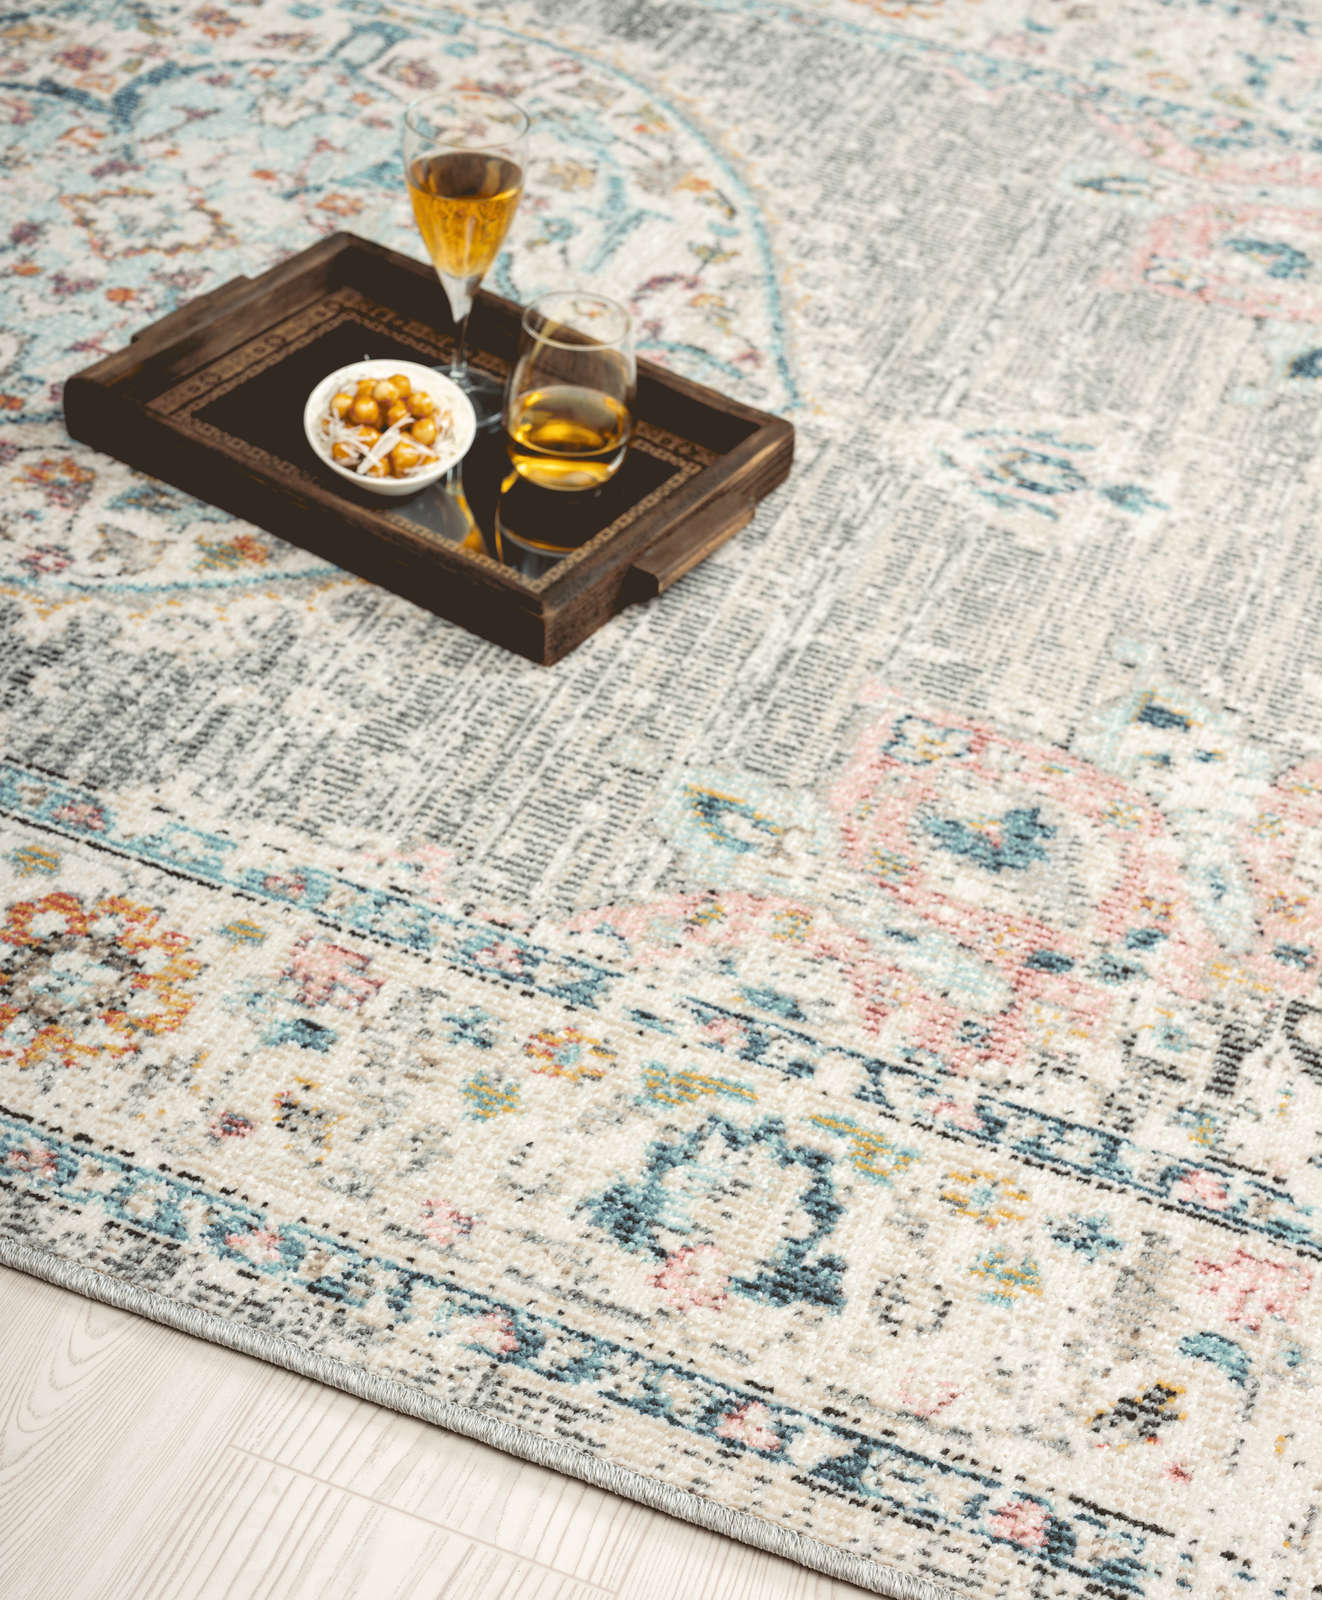             Grauer Outdoor Teppich aus Flachgewebe – 150 x 80 cm
        